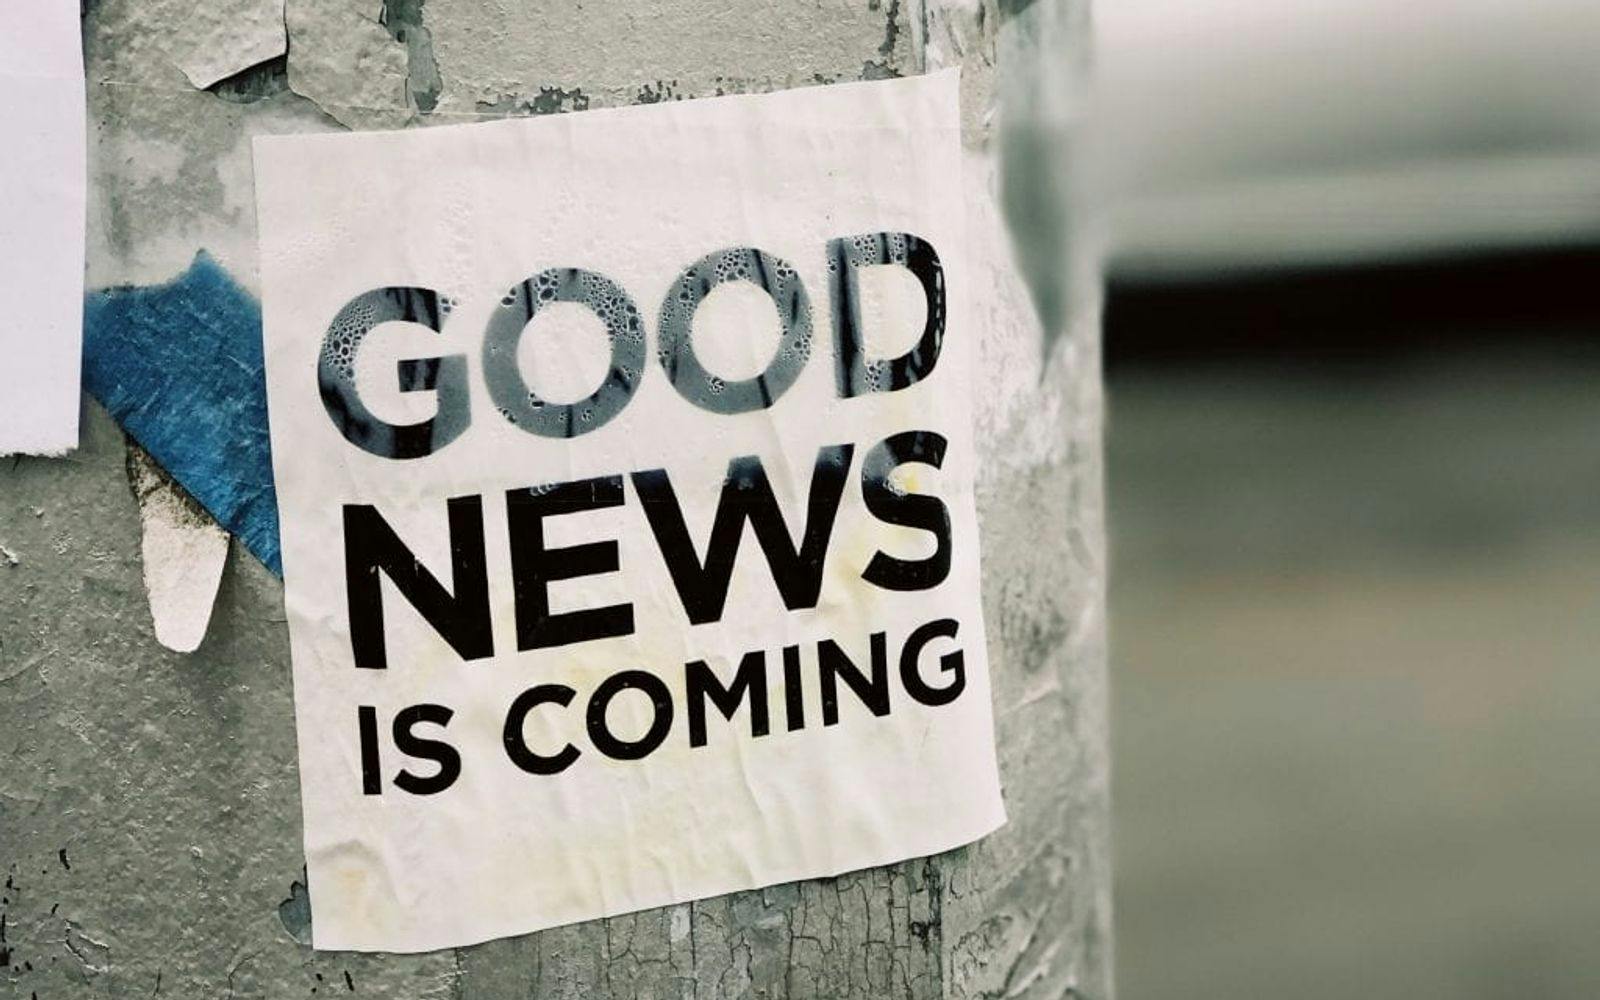 Klistremerke med teksten "Good news is coming" på en nedslitt lyktestolpe